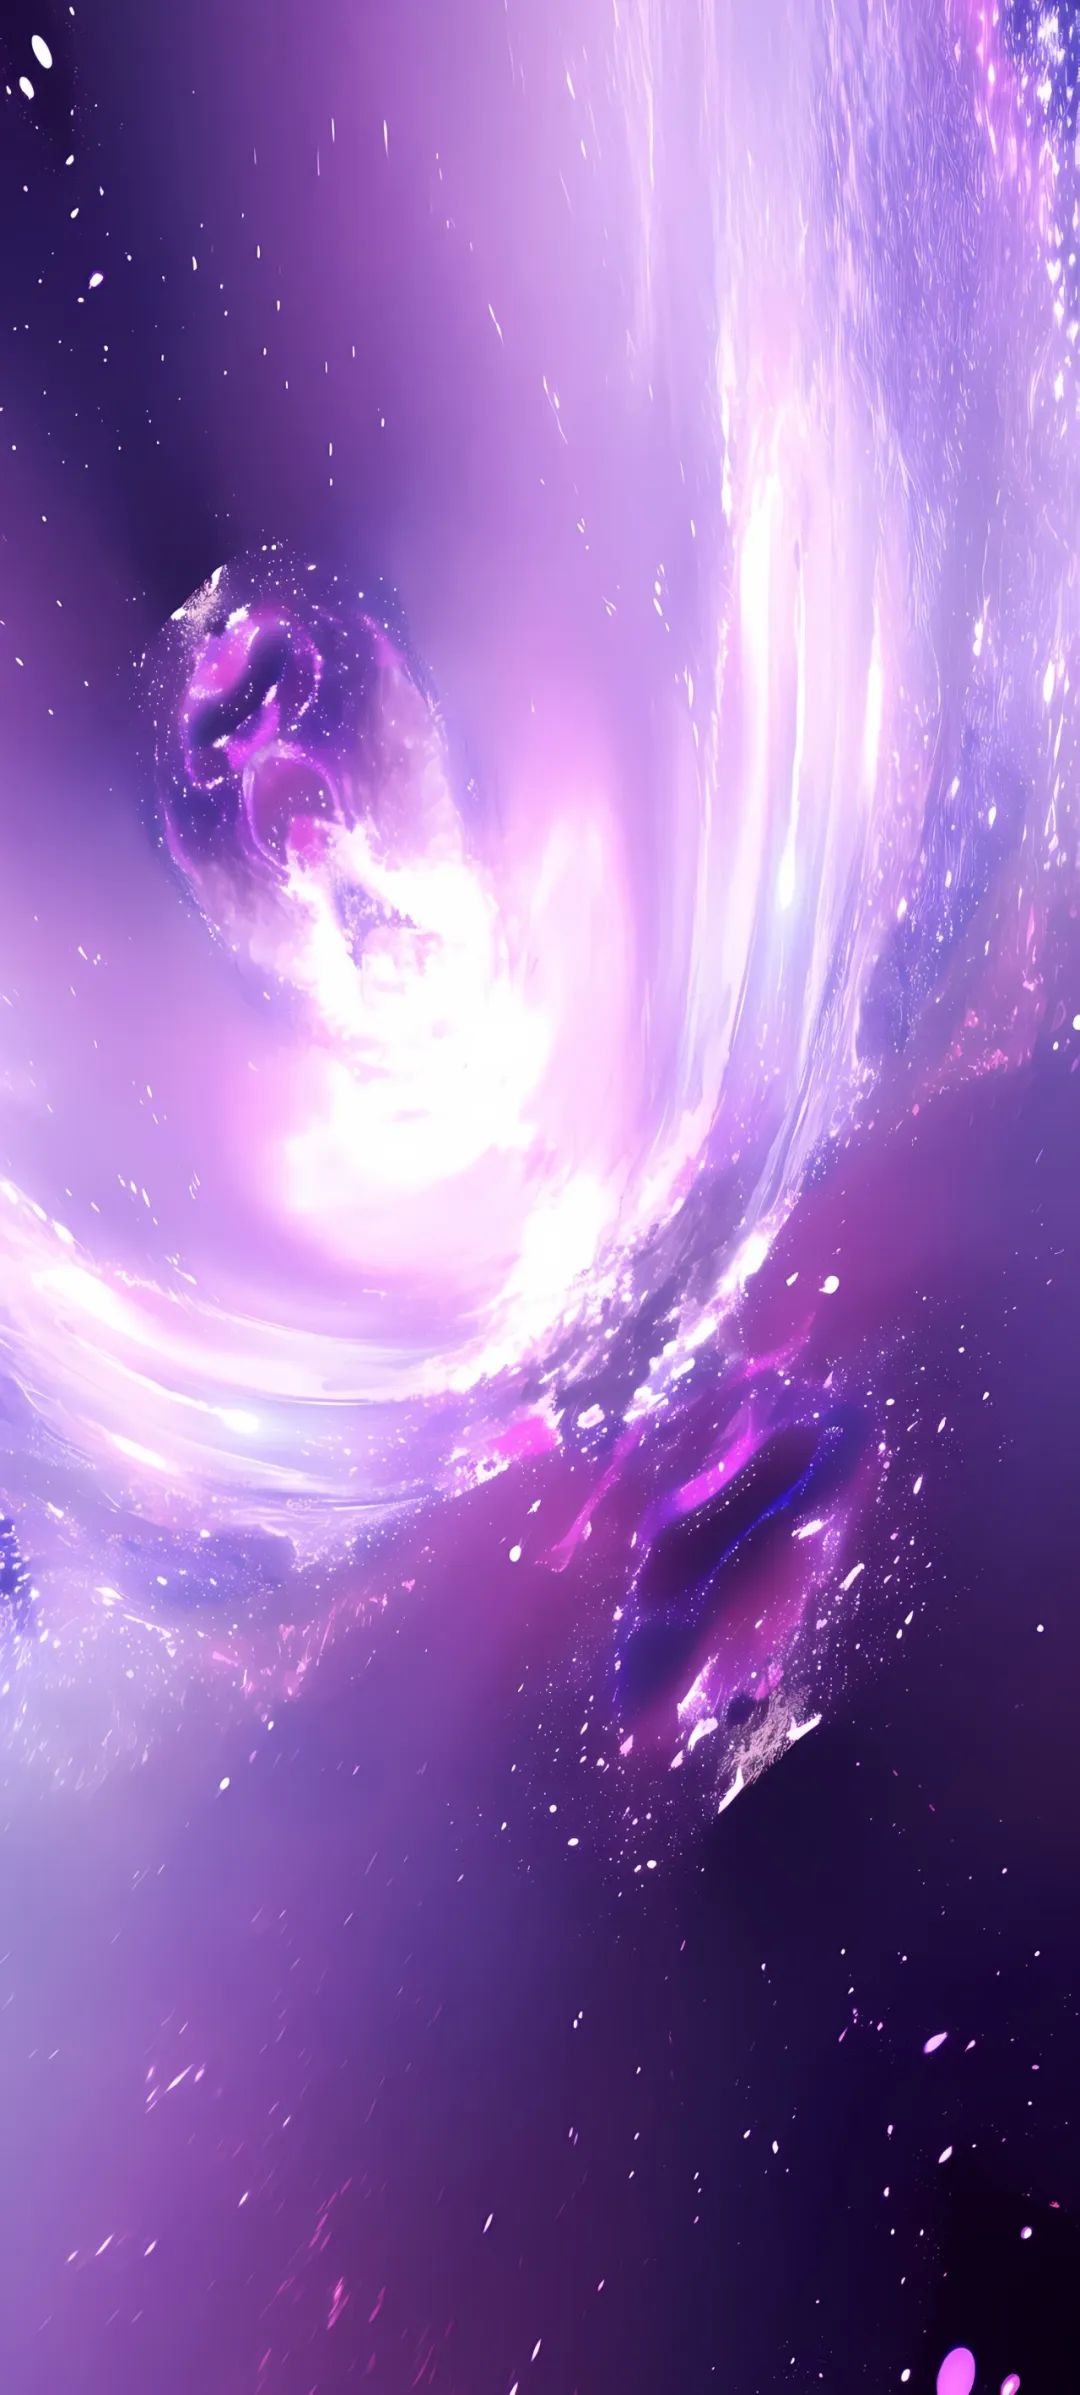 紫色系背景图简单图片